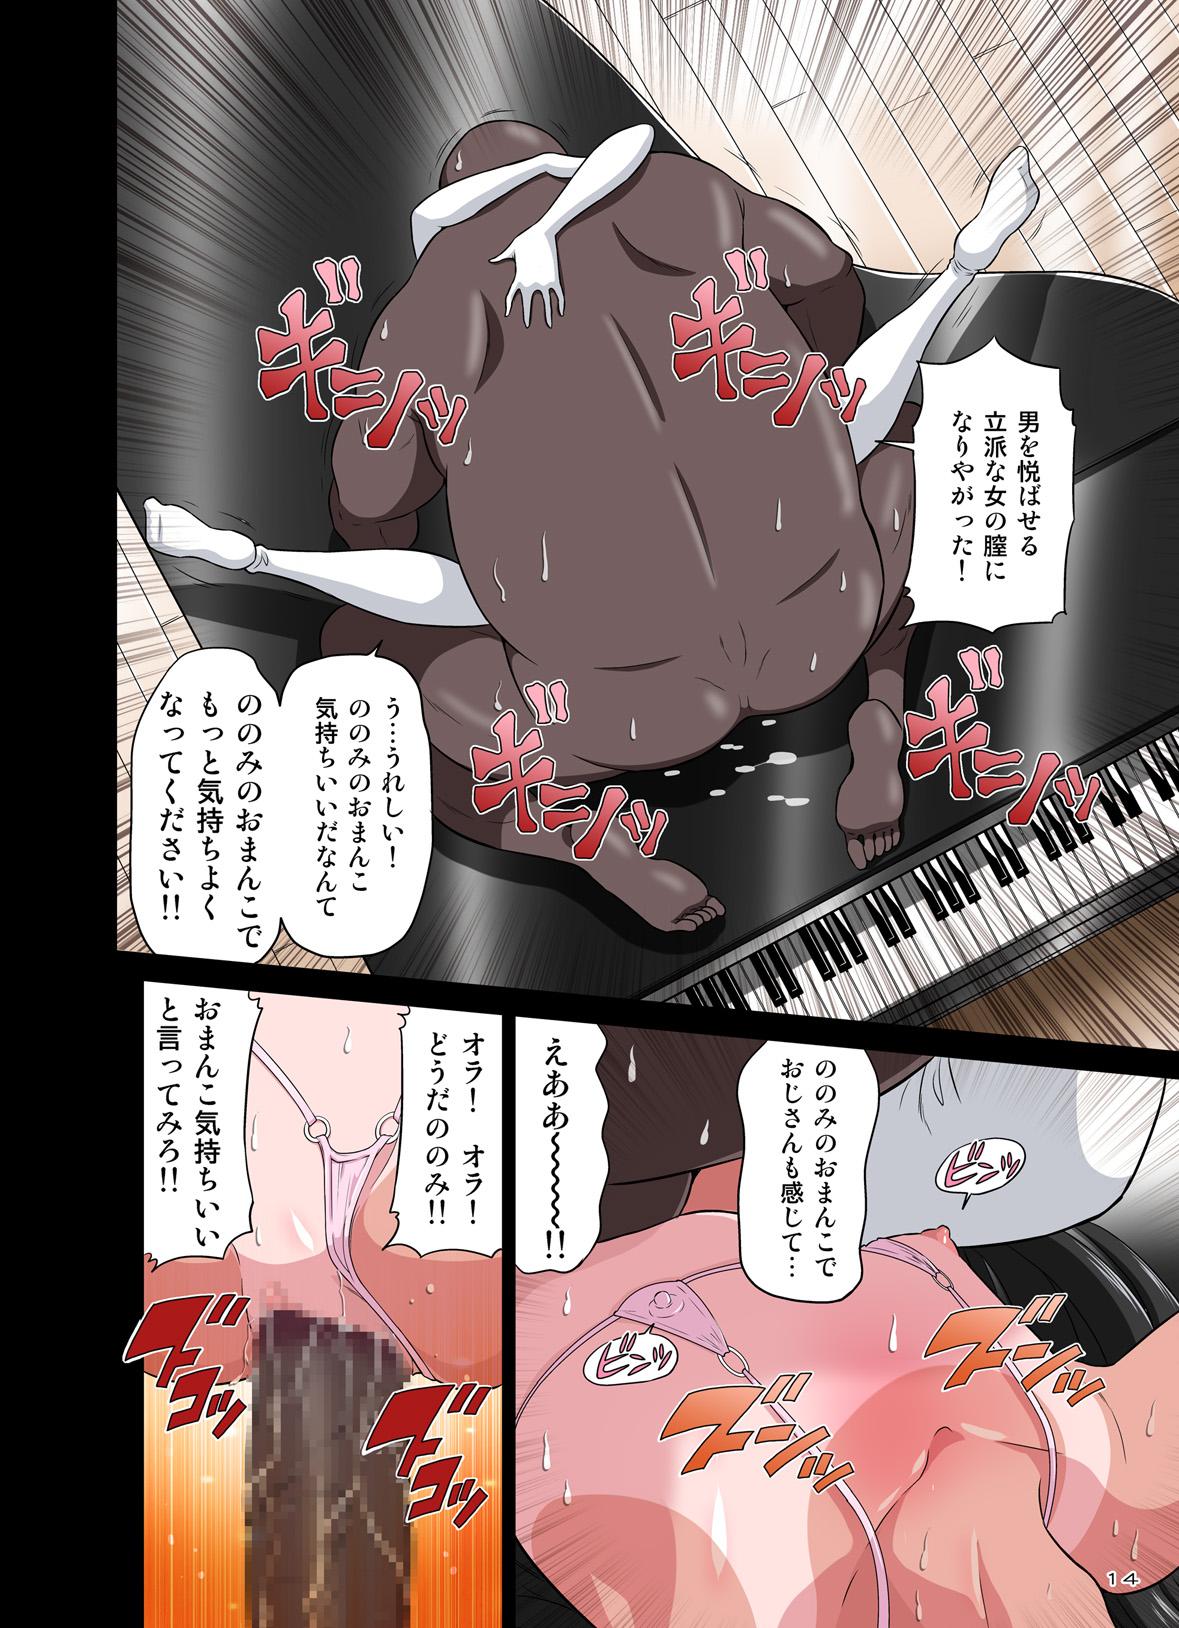 Kokujin VS Shougakusei vol, 2 - Piano Daisuki Shoujo 53